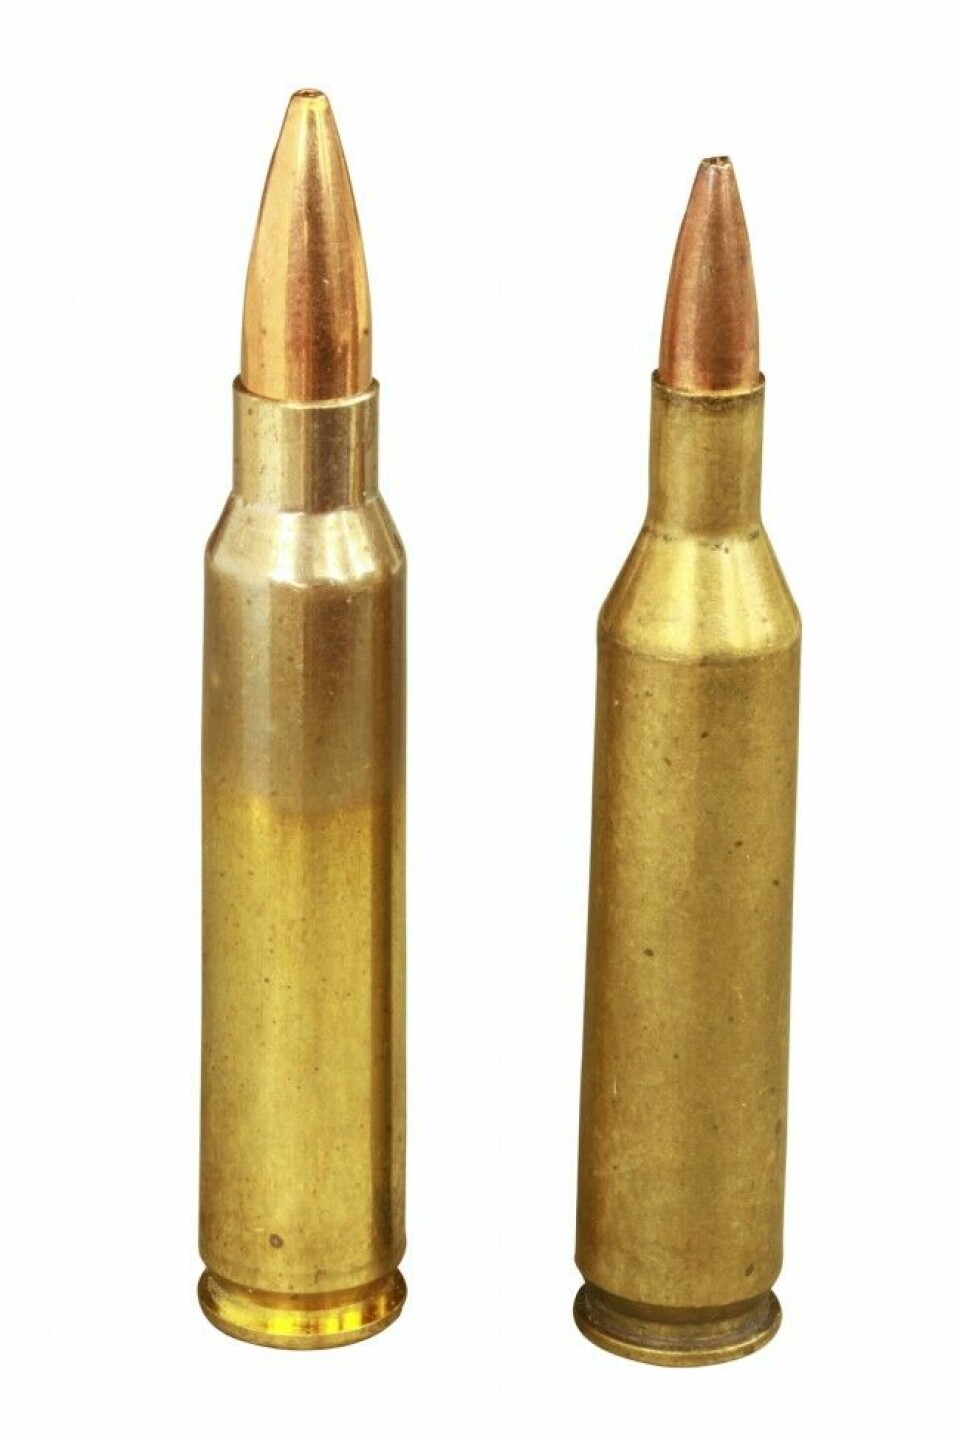 Villkatter er patroner som har sitt opphav blant eksperimentelle hjemmeladere. Kaliber .17 Remington til høyre på bildet eksisterte lenge som «villkatt» før Remington tok den inn i stallen i 1971. Opphavspatronen til venstre er .223 Remington som ble utviklet i 1957.